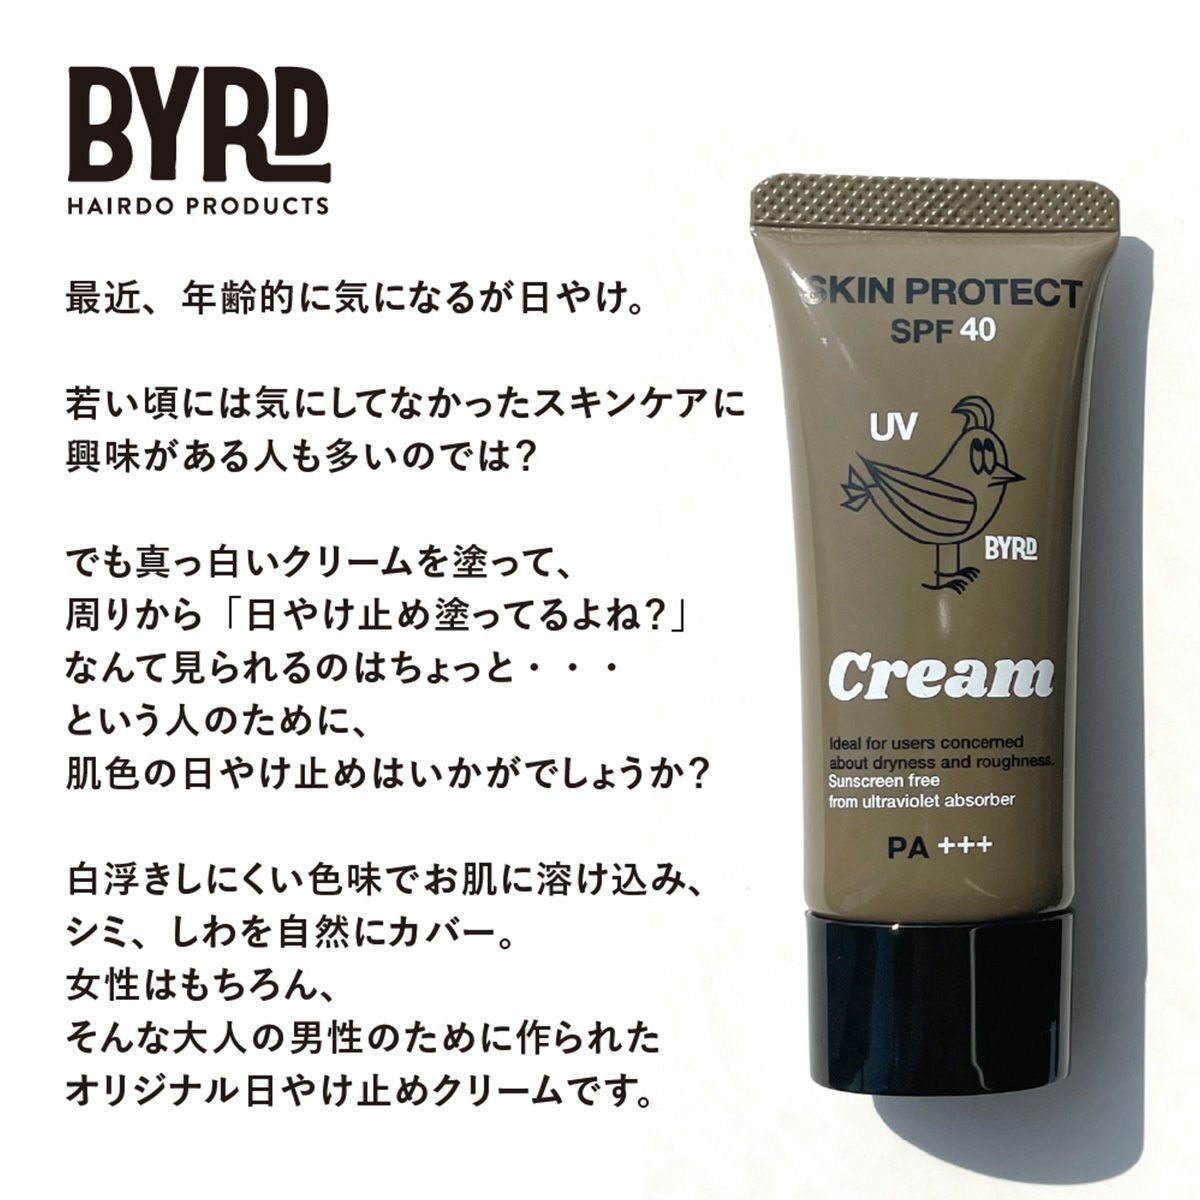 BYRD/UVクリーム